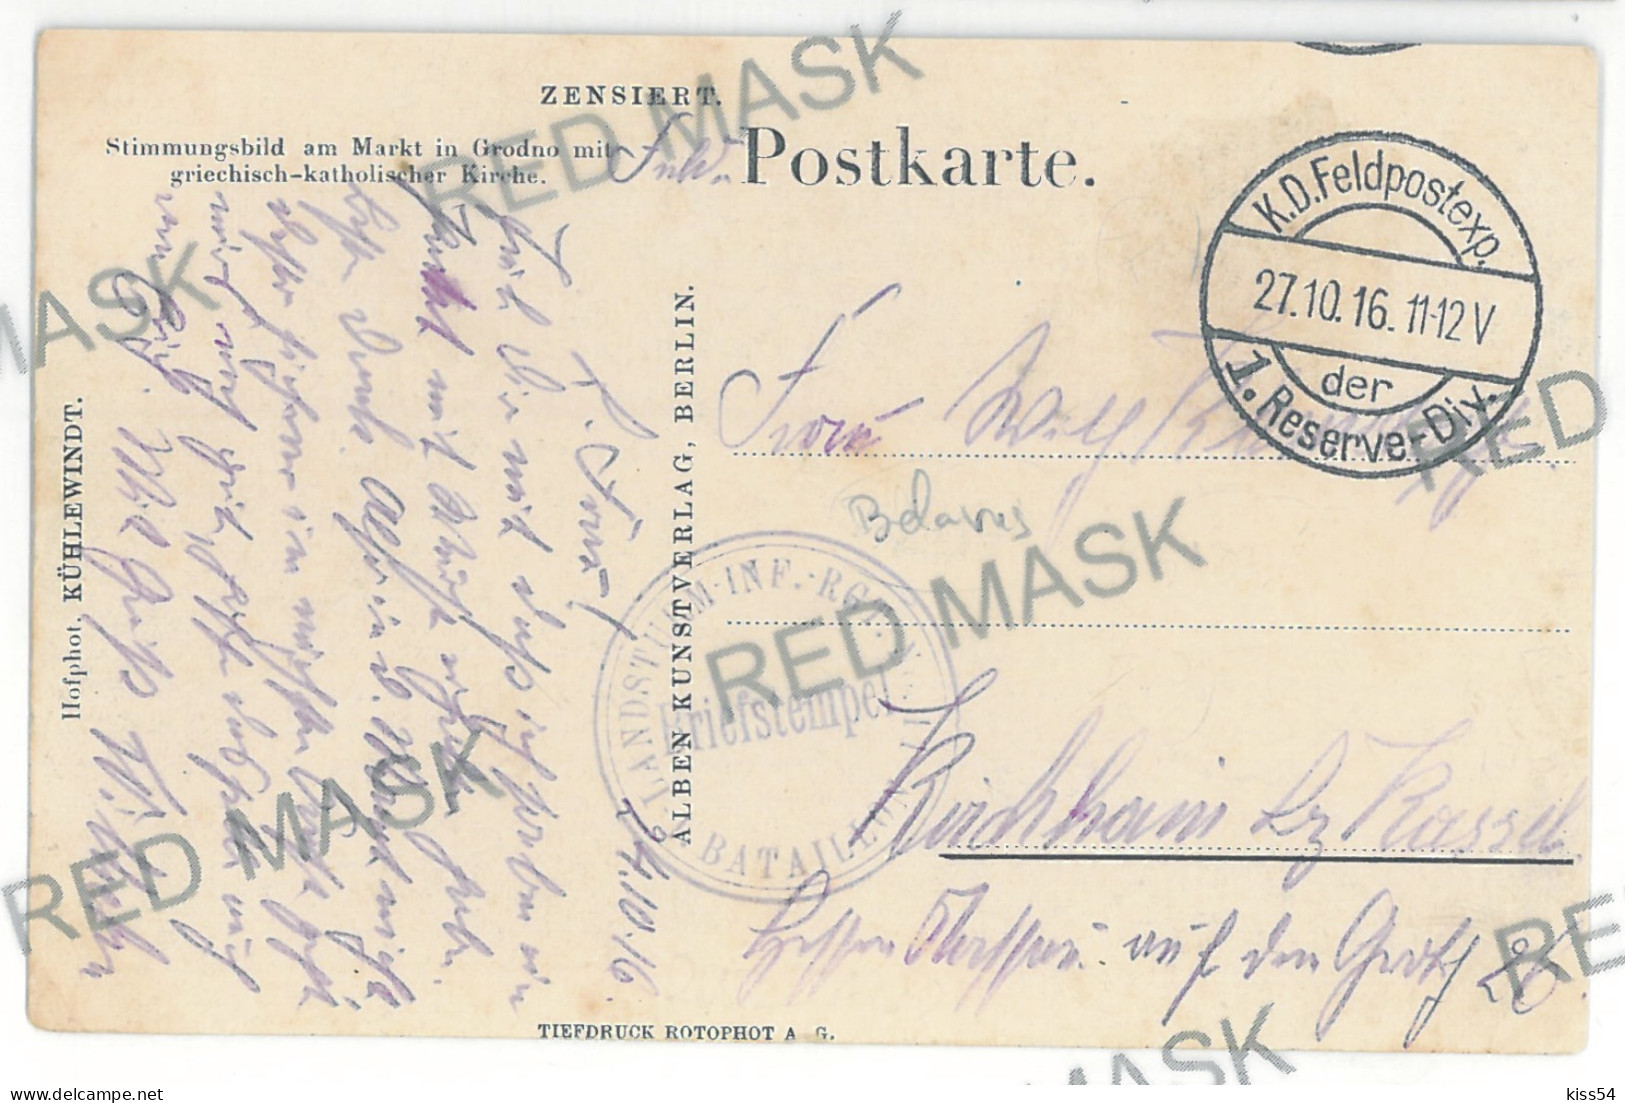 BL 22 - 5100 GRODNO, Belarus, Church And Maket - Old Postcard, CENSOR - Used - 1916 - Belarus